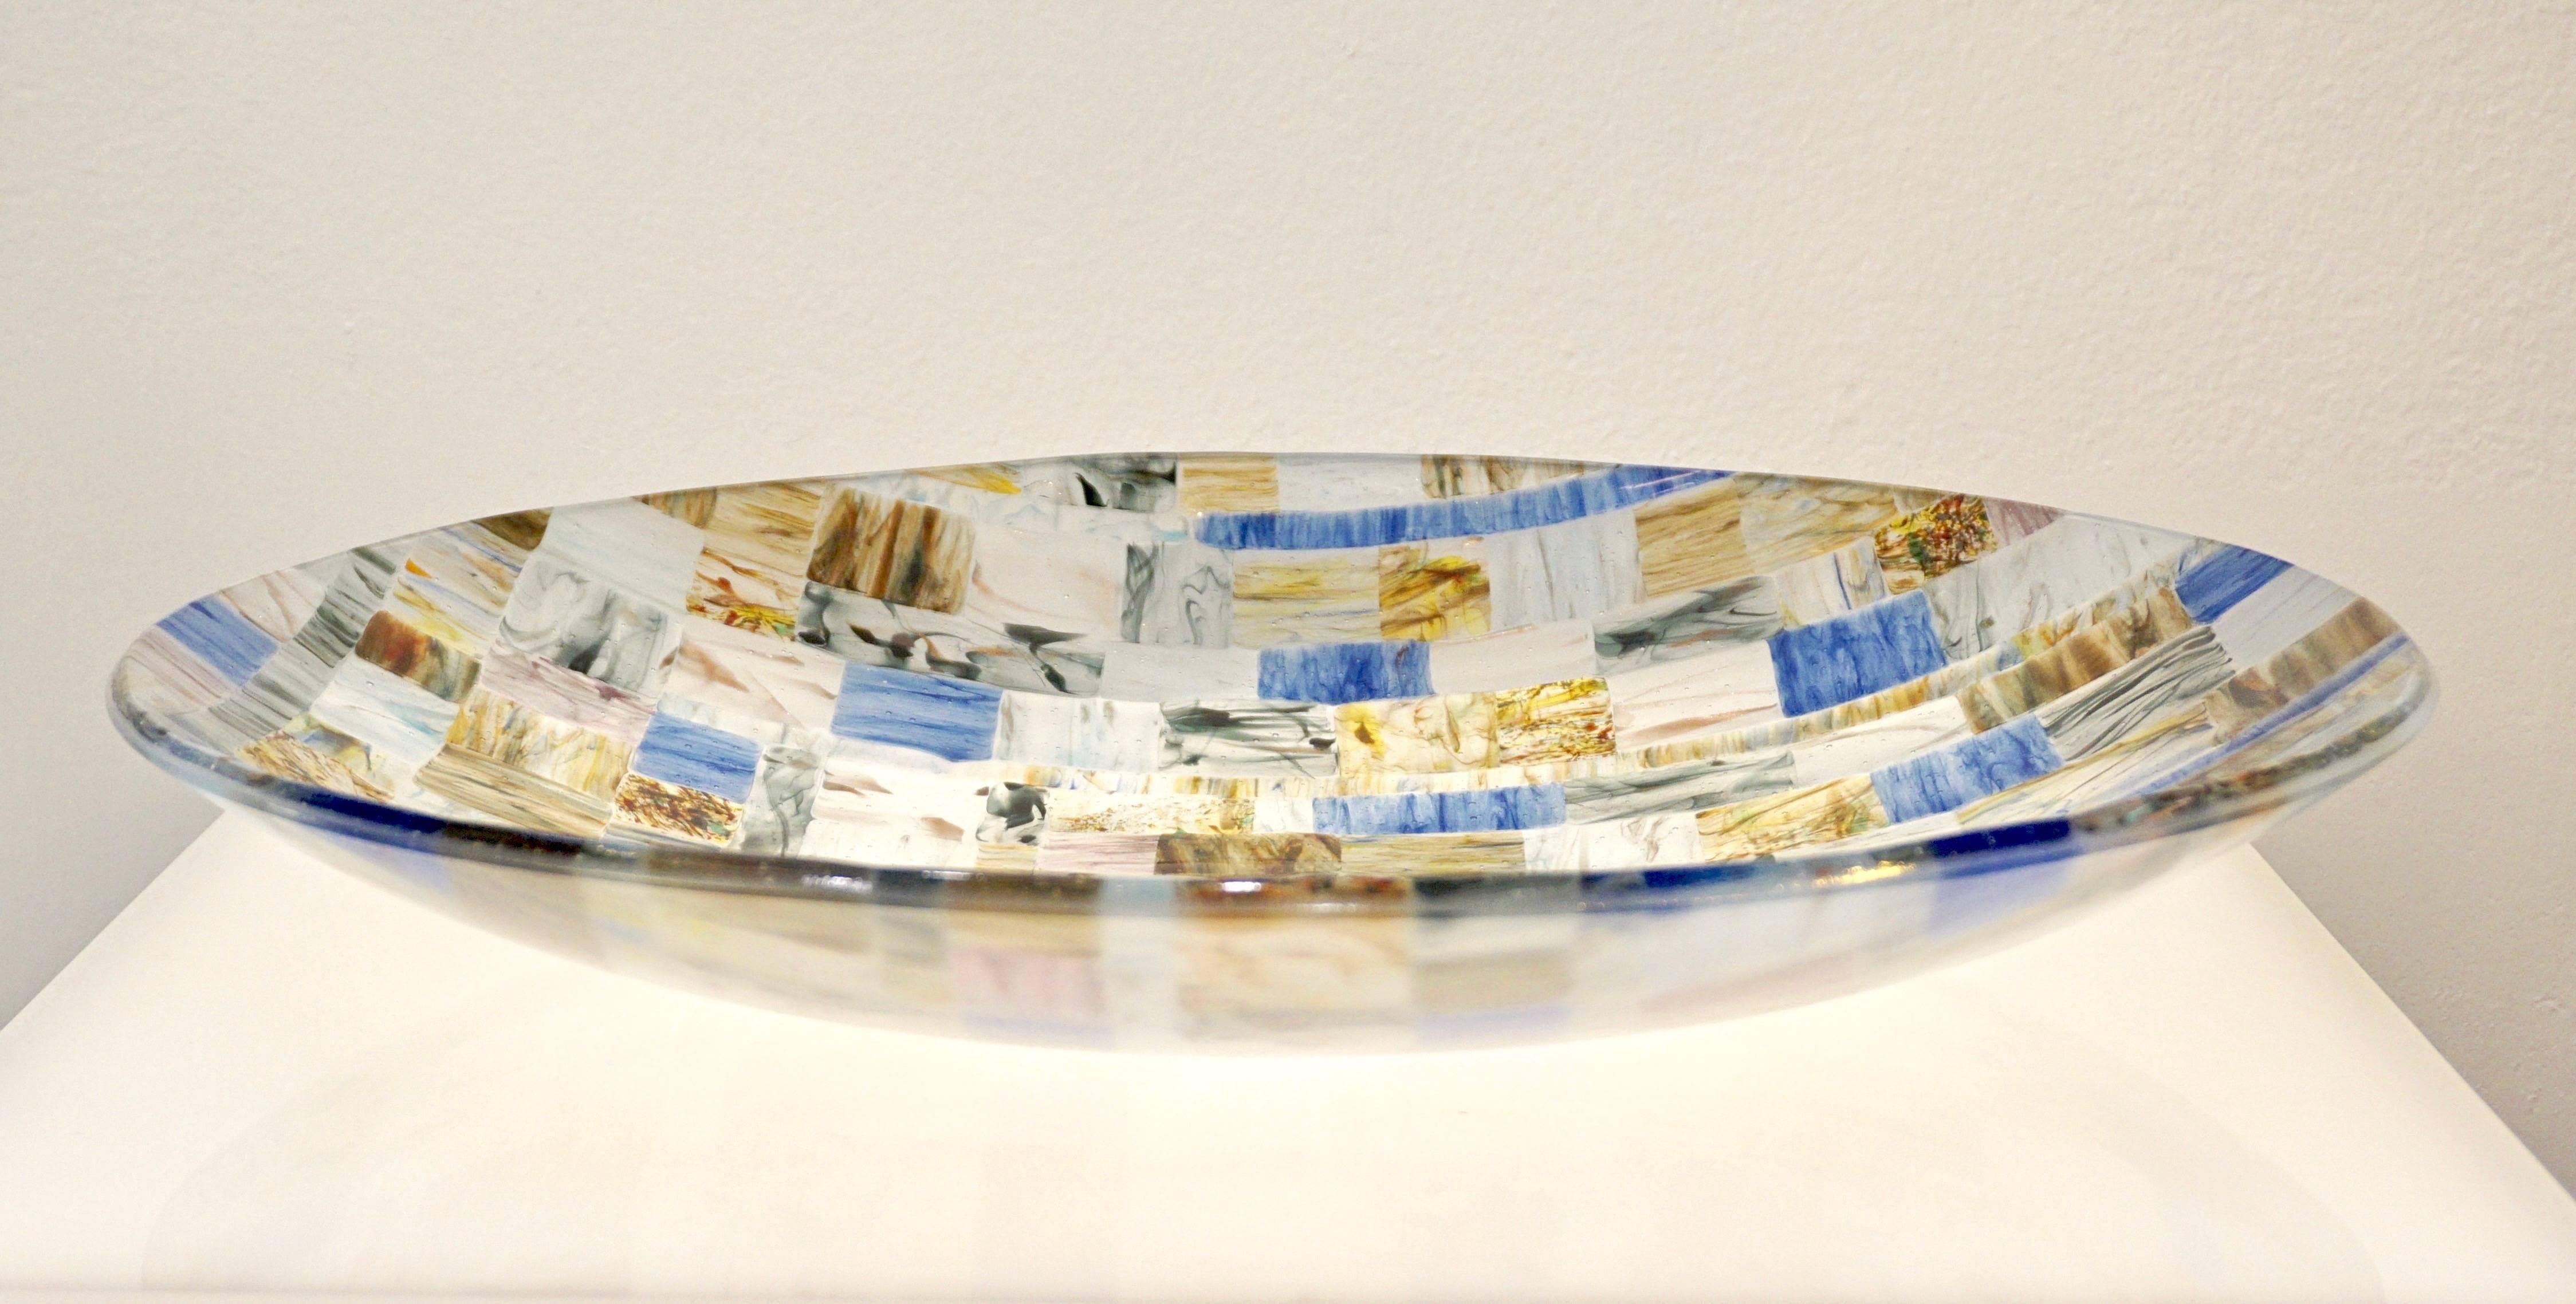 Sculpture en verre d'art moderne contemporain de Murano, un centre de table décoratif réalisé sous forme de mosaïque colorée, chaque petit carré de verre transparent positionné individuellement à la main est fabriqué à la main et travaillé avec